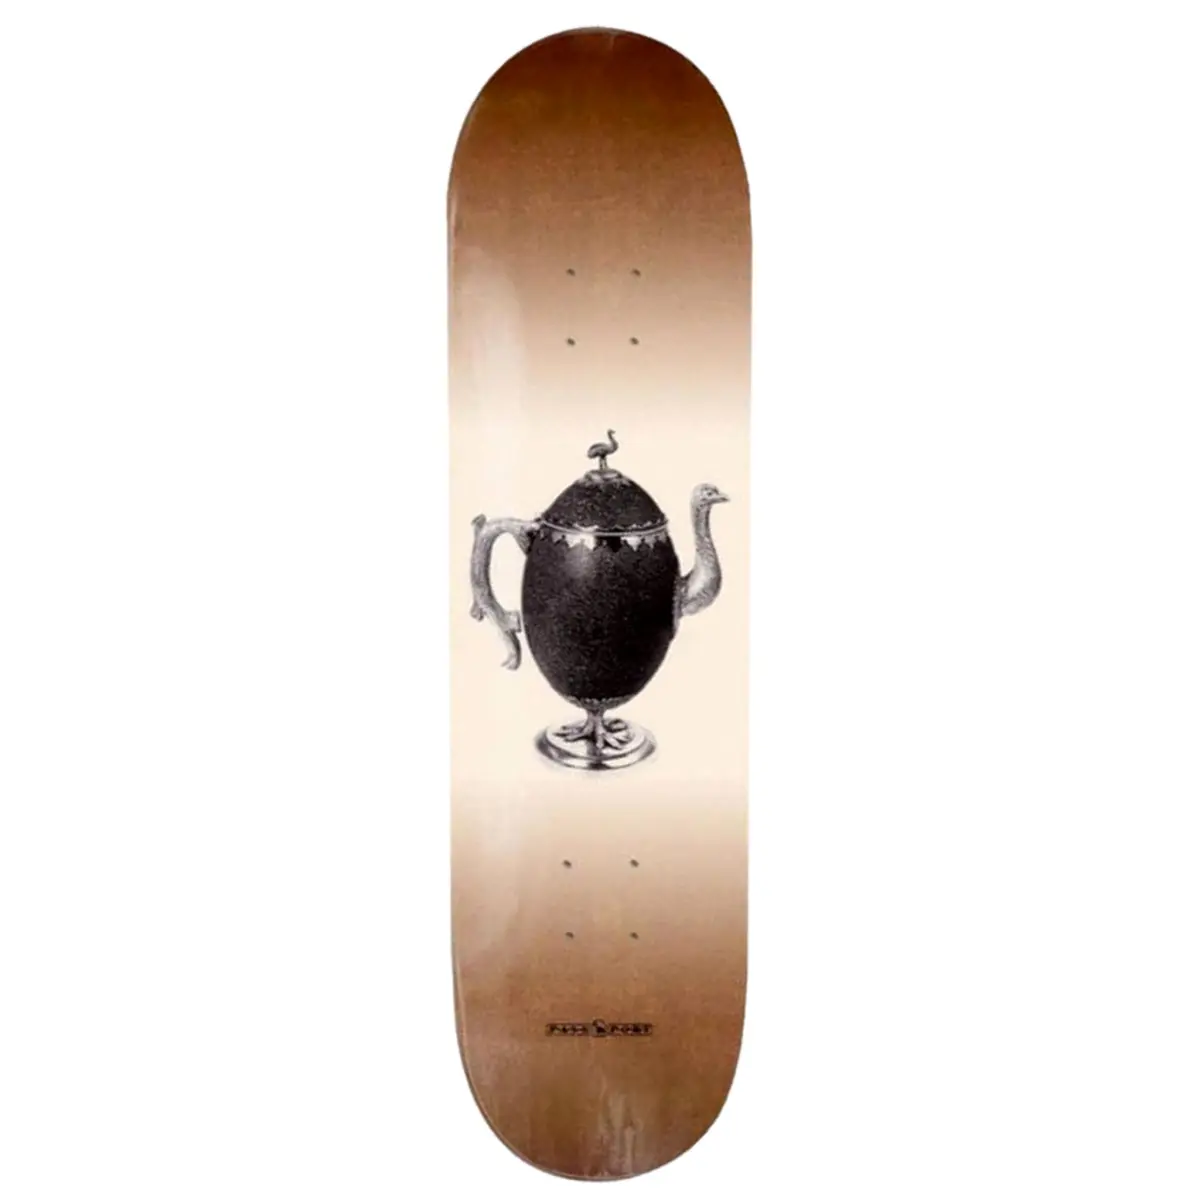 Pass port skateboards emu egg 8.25